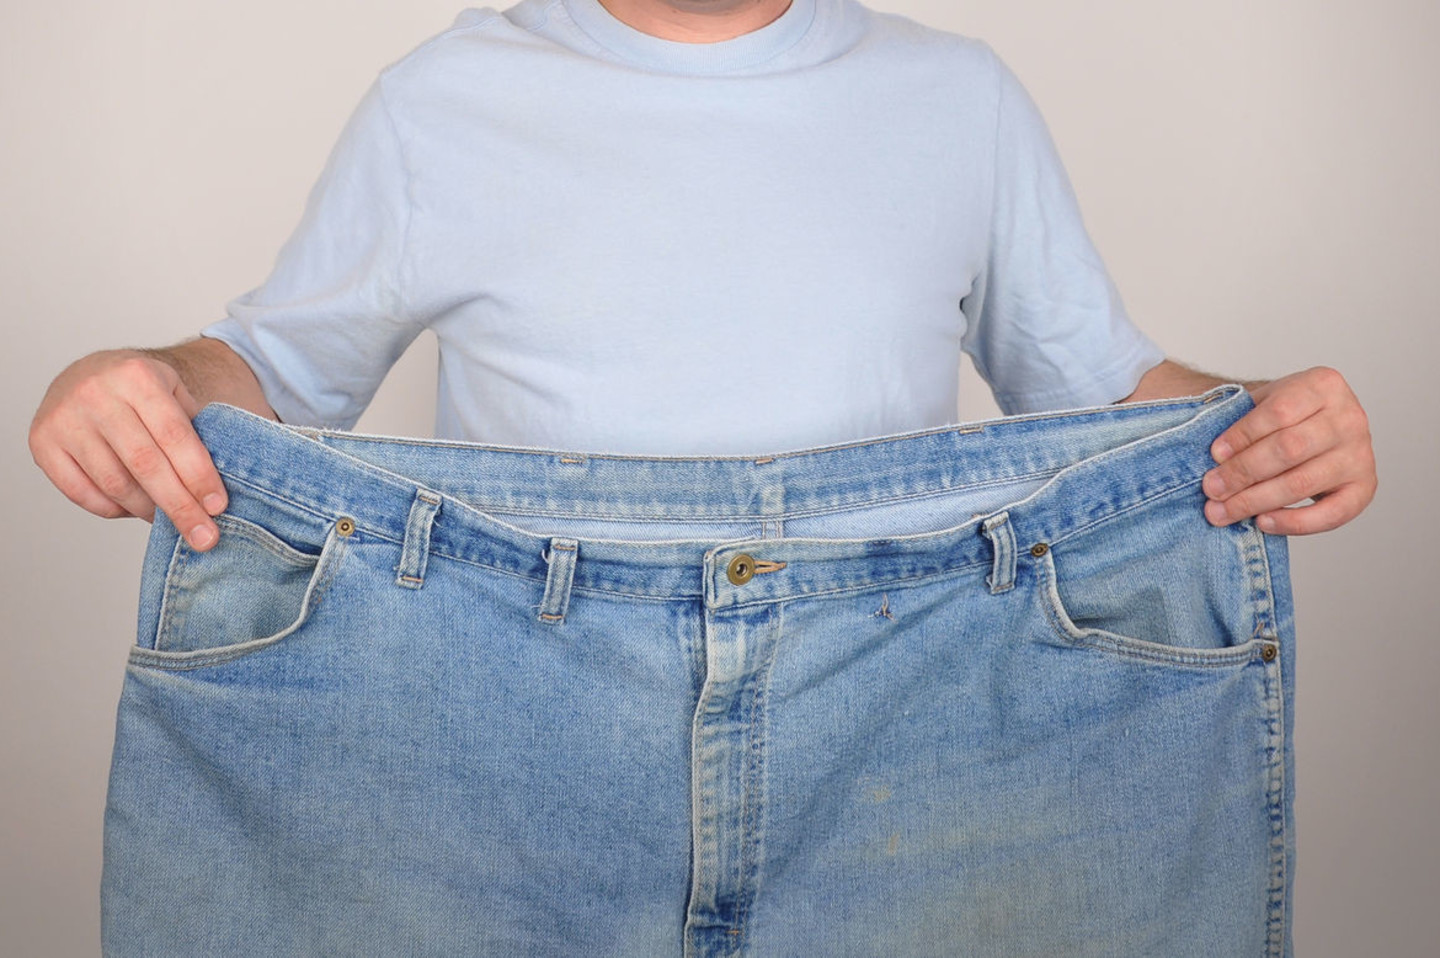 kaip numesti svorio su isabgolio lukštu ar spjaudymasis padeda numesti svorį